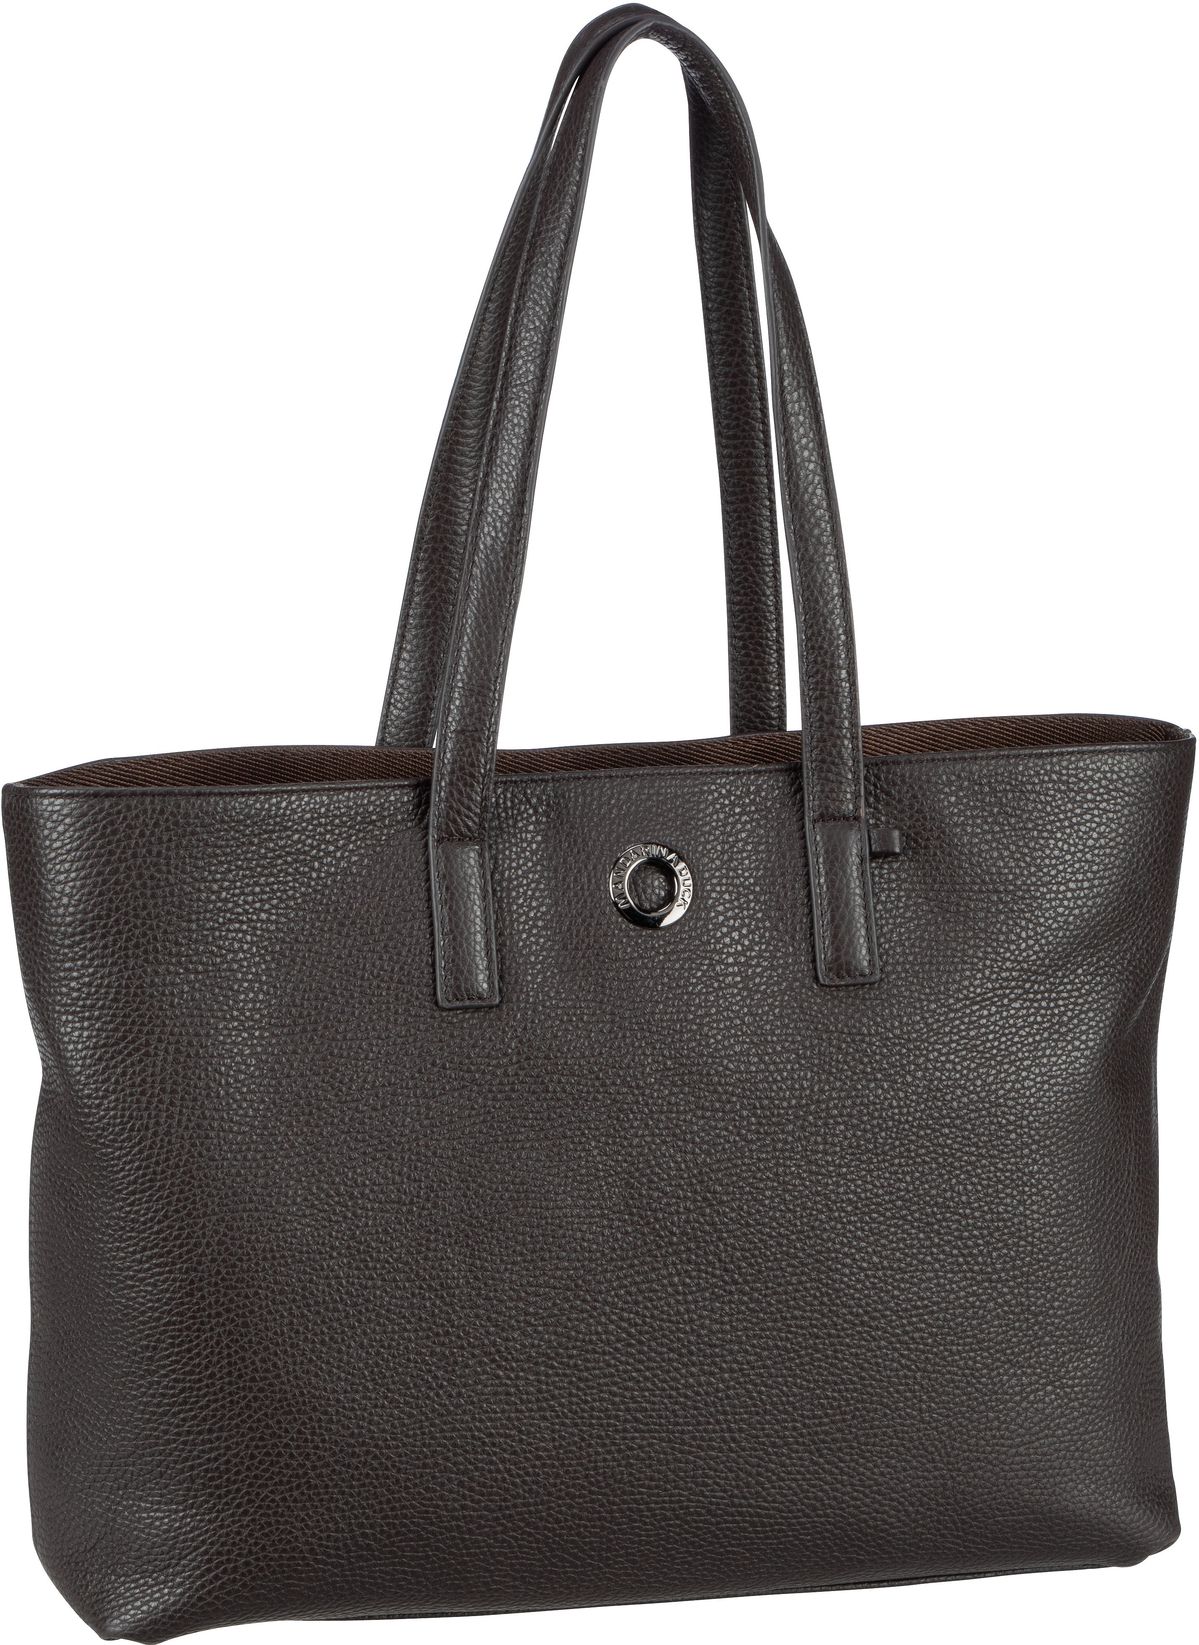 Mandarina Duck Mellow Leather Shopping Bag FZT24 - Mole